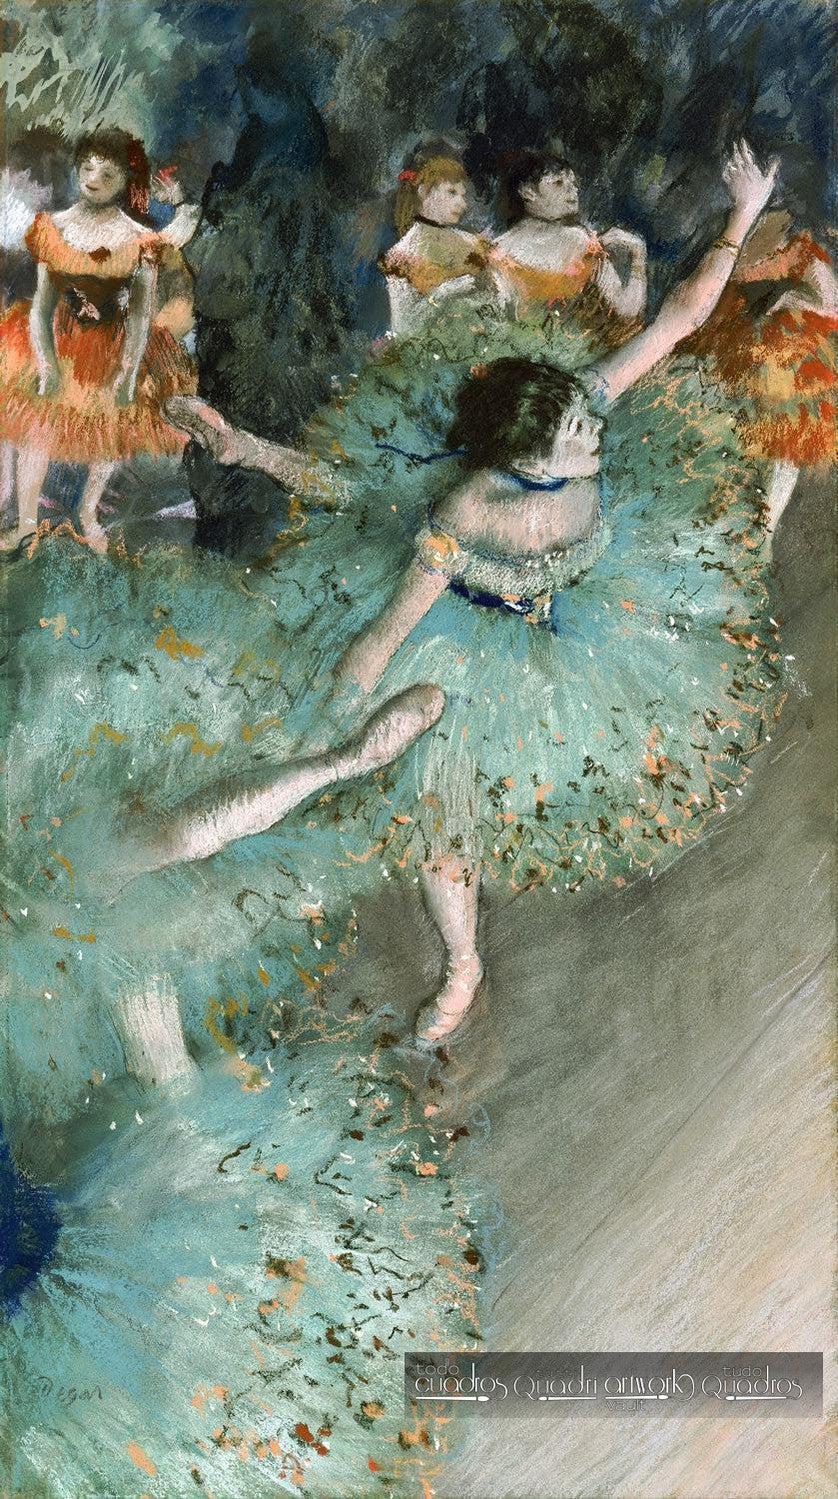 Bailarina basculando, Degas